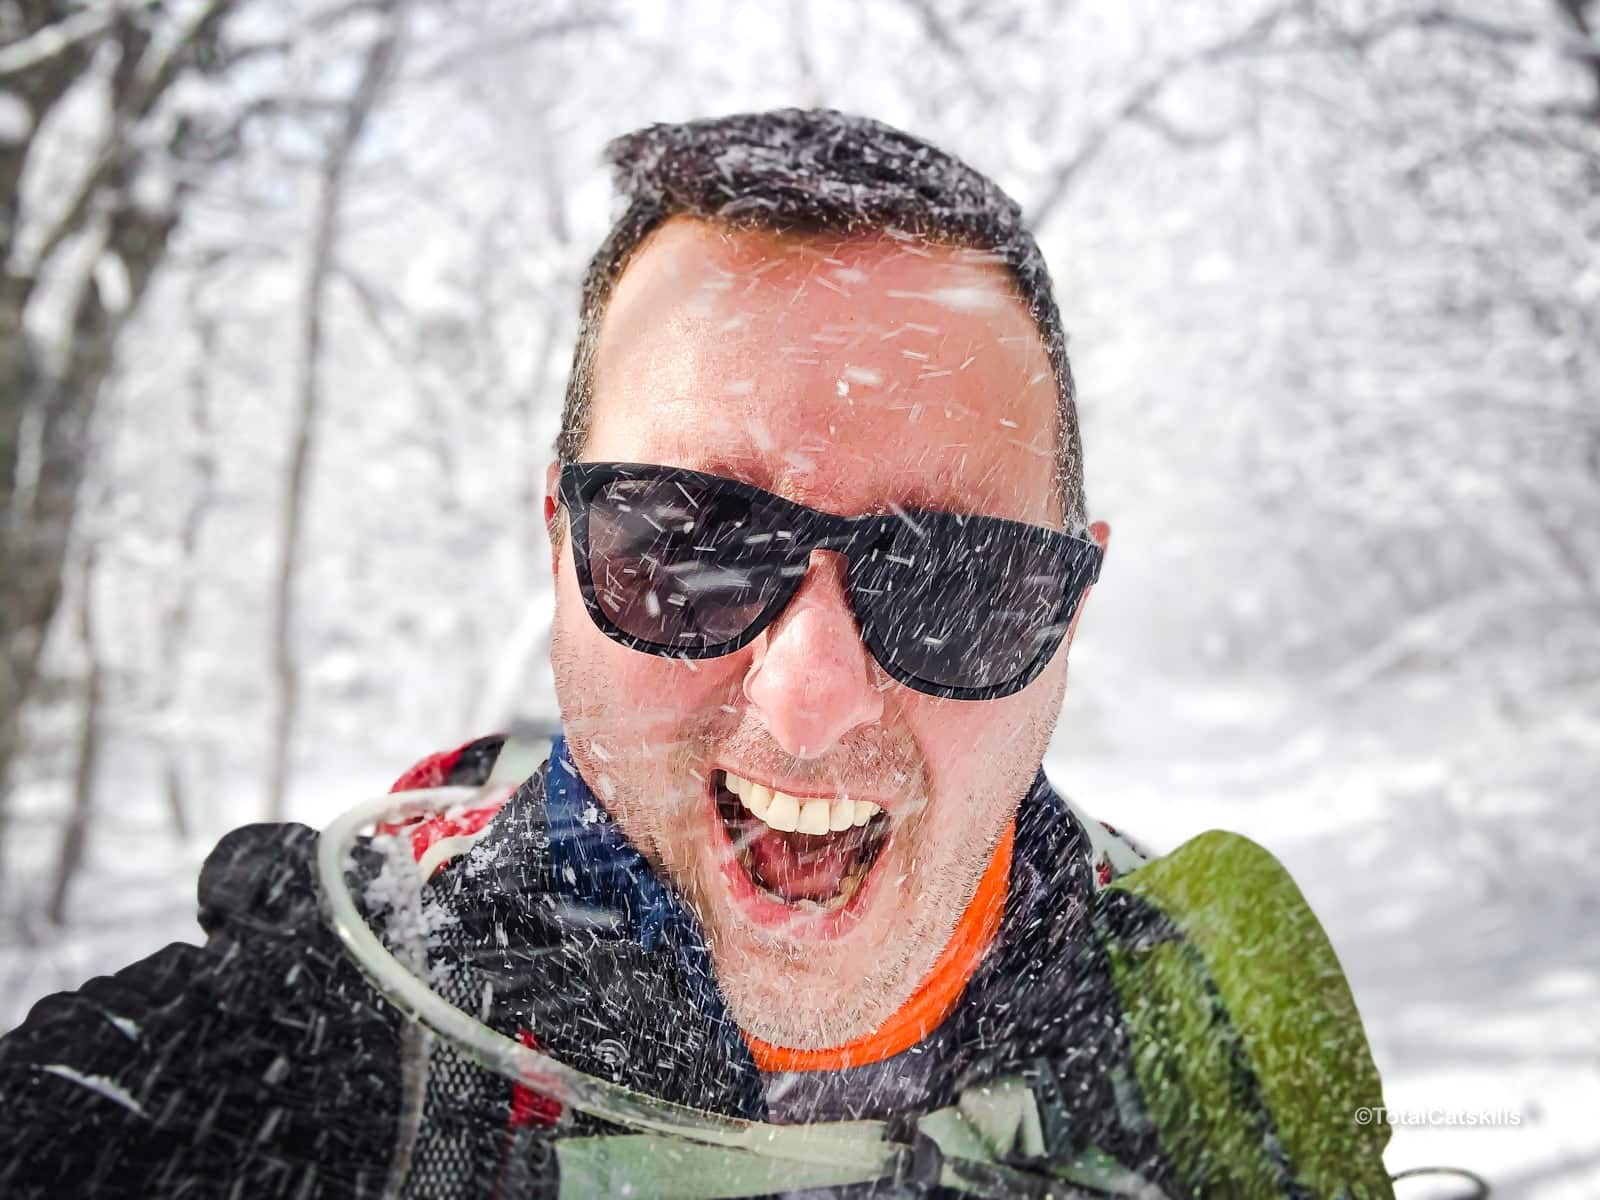 Sean enjoying the benefits of winter hiking